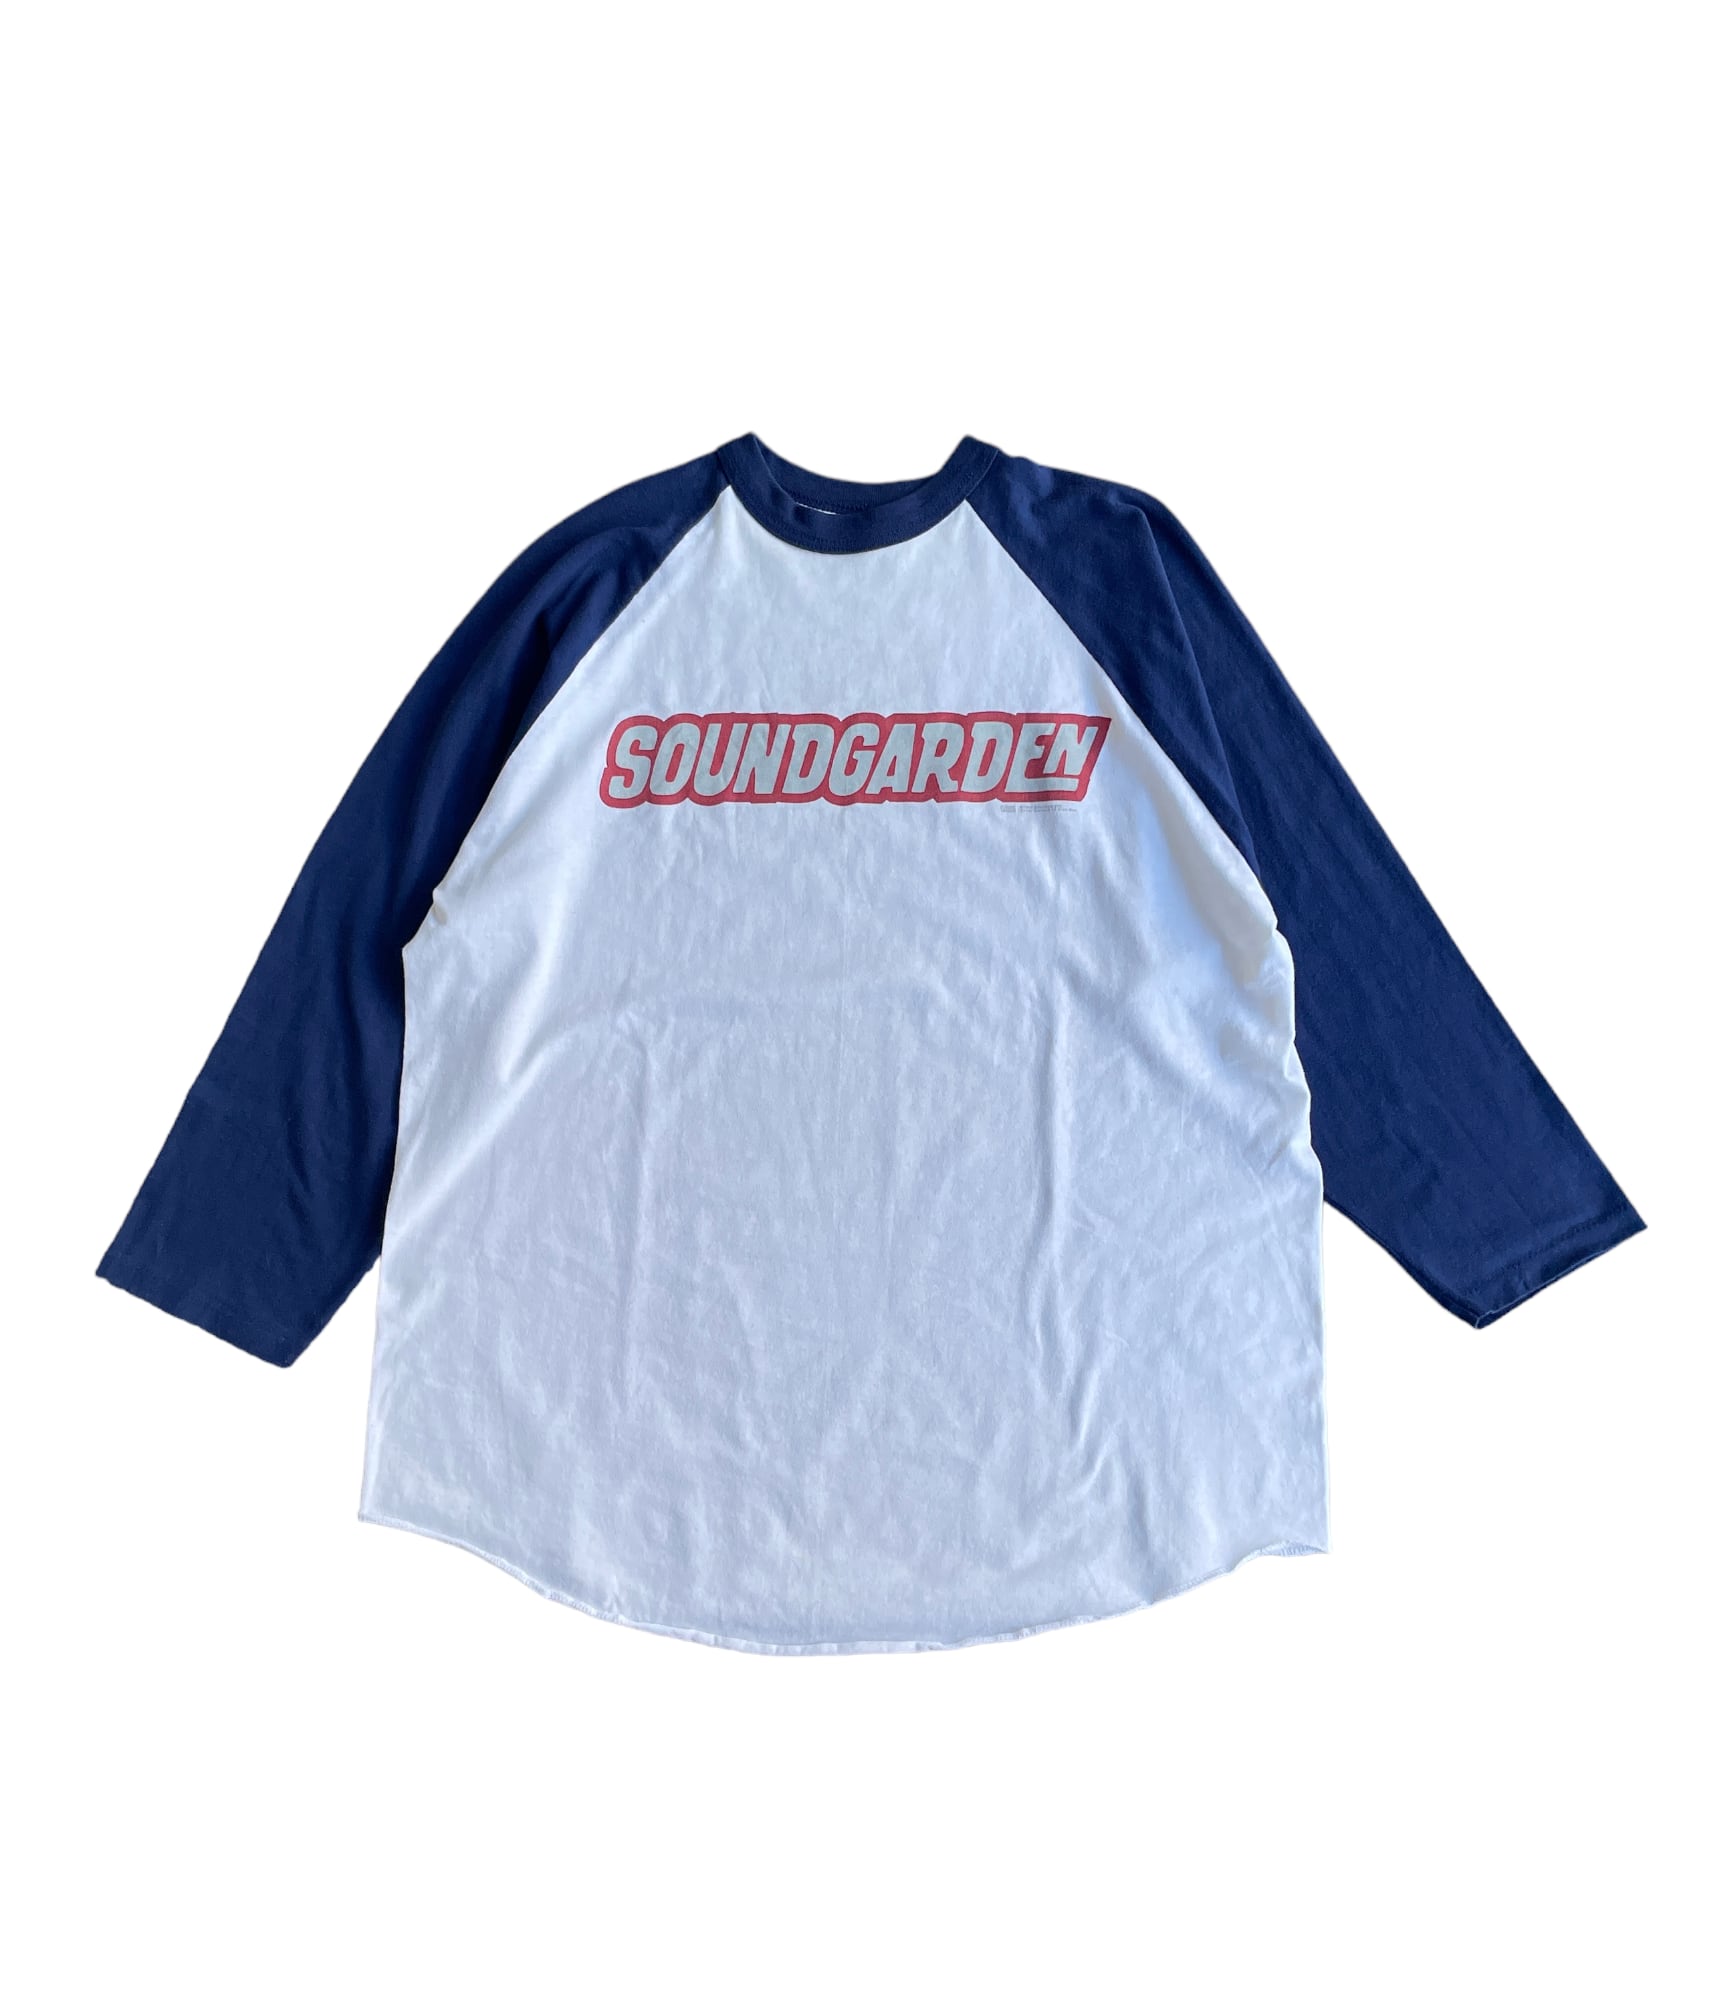 90's vintage SOUNDGARDEN T-shirt XL ACME